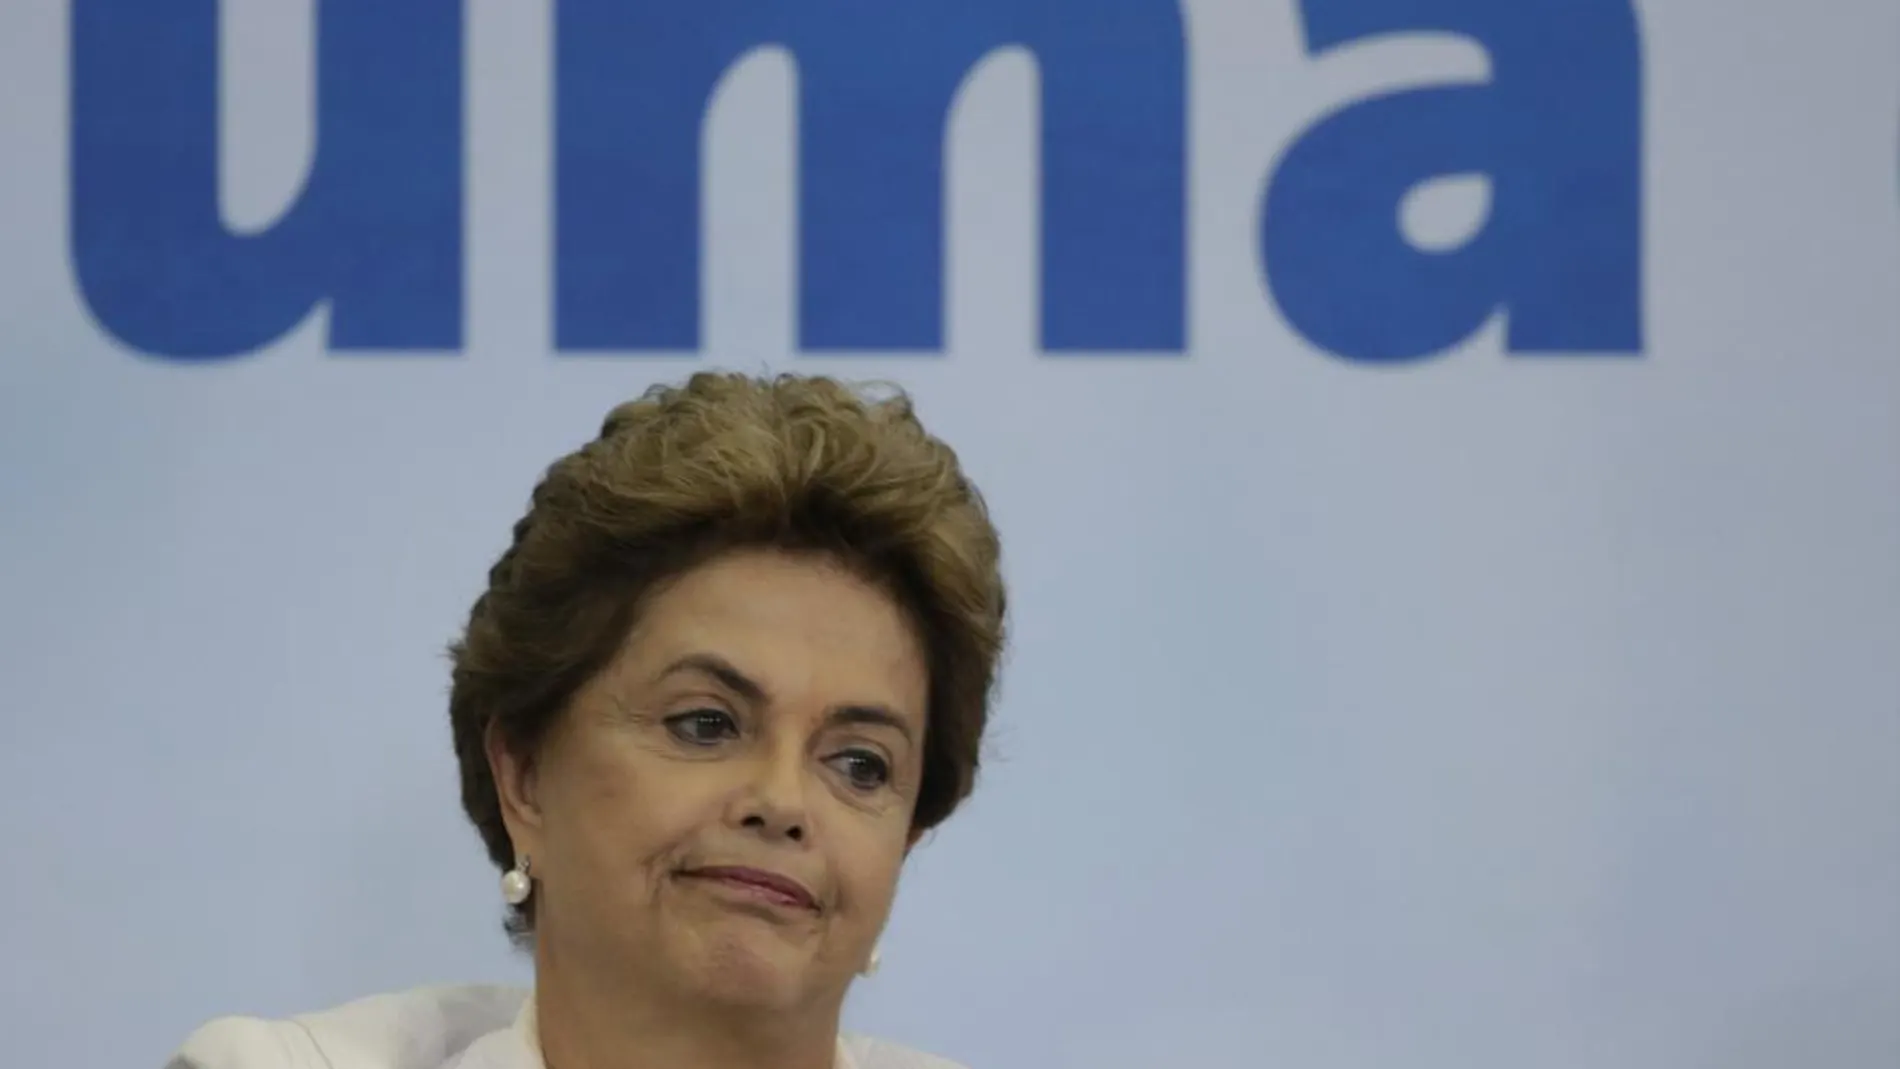 La presidenta de Brasil, Dilma Rousseff, participando en una ceremonia este, miércoles 30 de marzo de 2016, en el Palacio del Planalto en Brasila